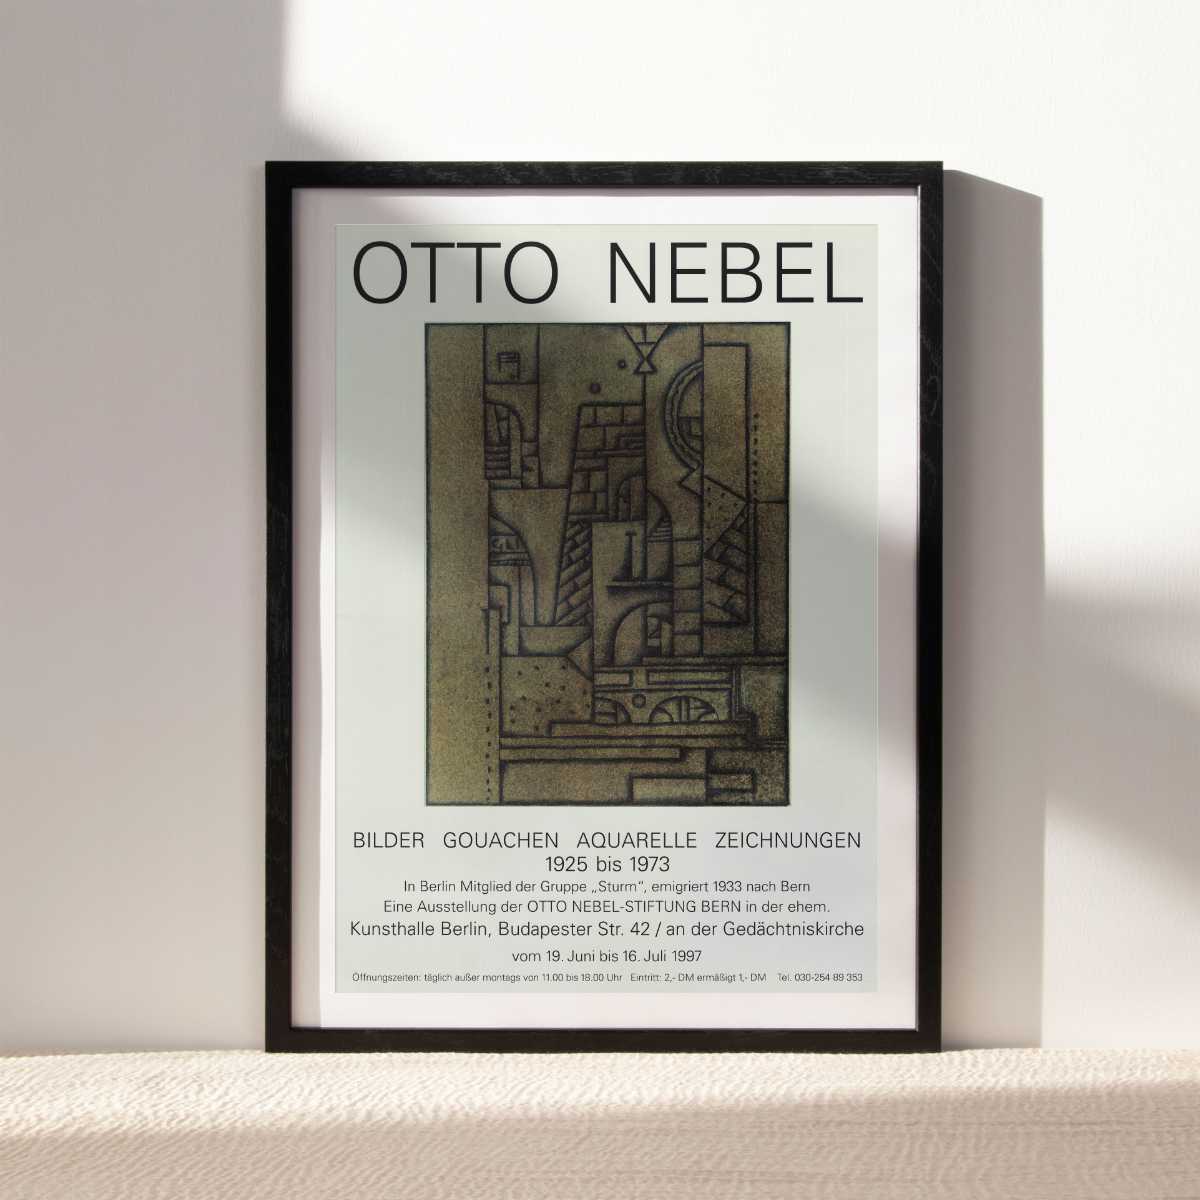 Otto Nebel - Bilder, Gouachen, Aquarelle, Zeichnungen (1925-1973), Otto-Nebel-Stiftung Bern, 1997